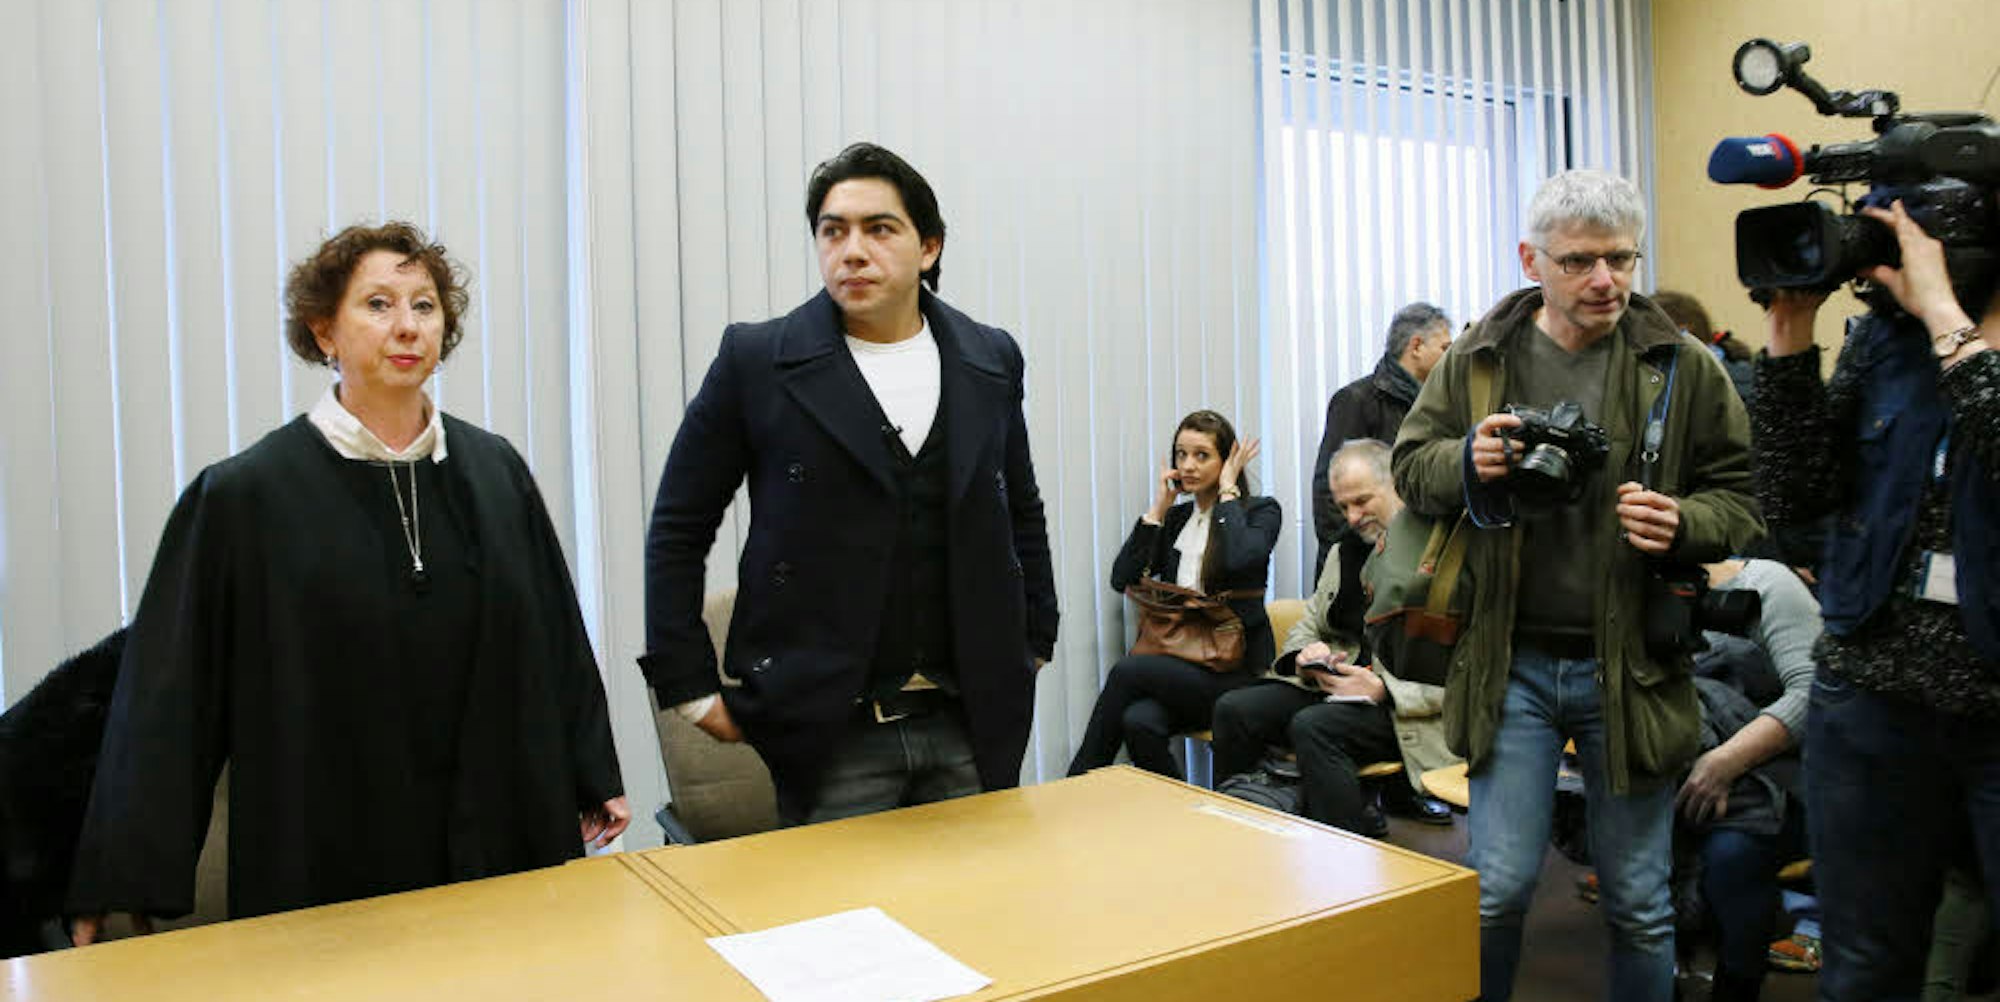 Nenad Mihailovic und seine Anwältin Anneliese Quack